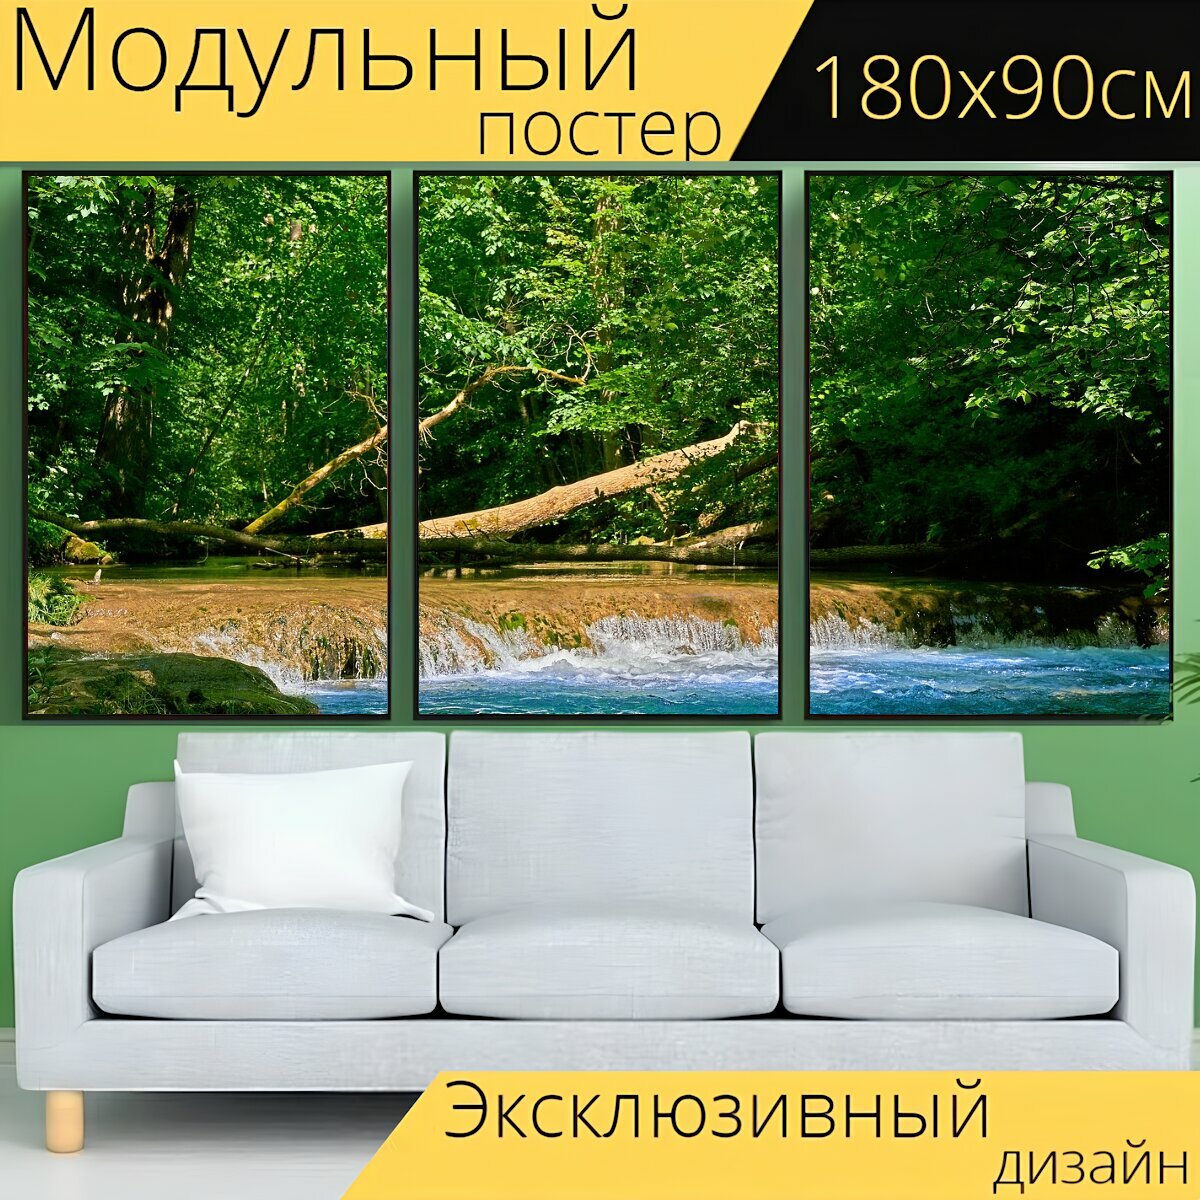 Модульный постер "Ручей, природа, водопад" 180 x 90 см. для интерьера